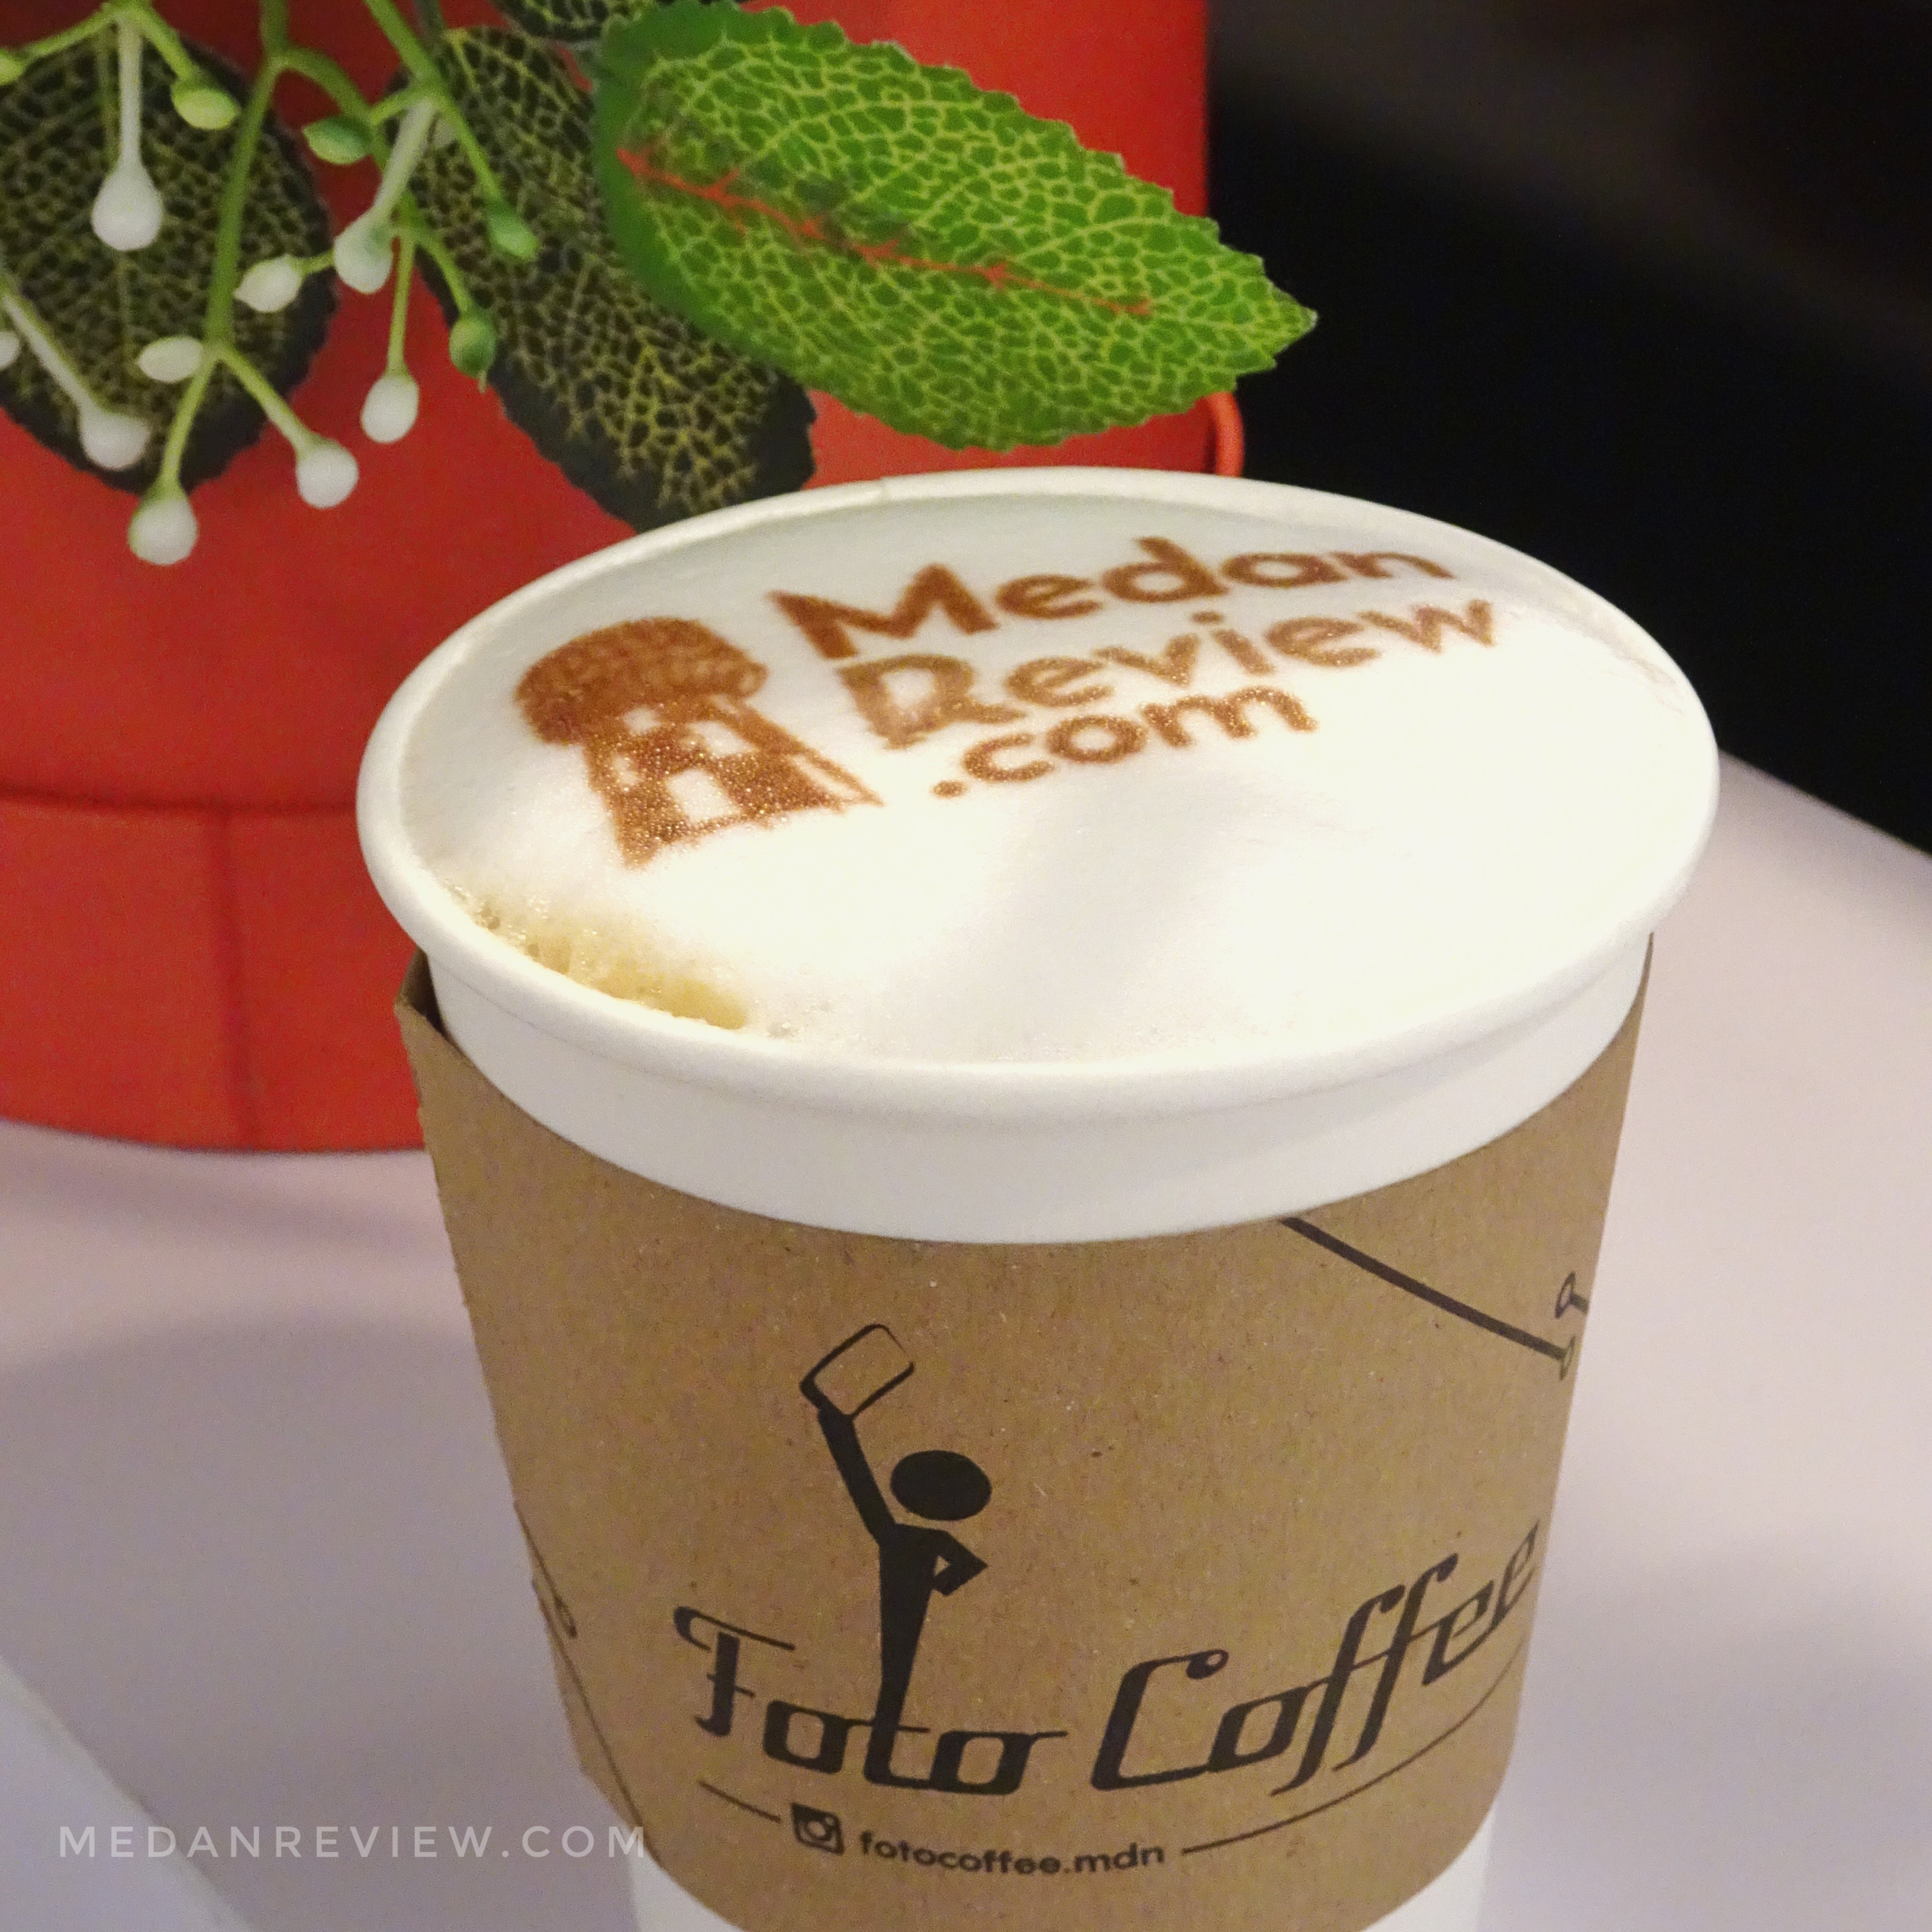 Foto Coffee (@FotoCoffee.Mdn) Menyajikan Coffee Latte Berwajah Anda